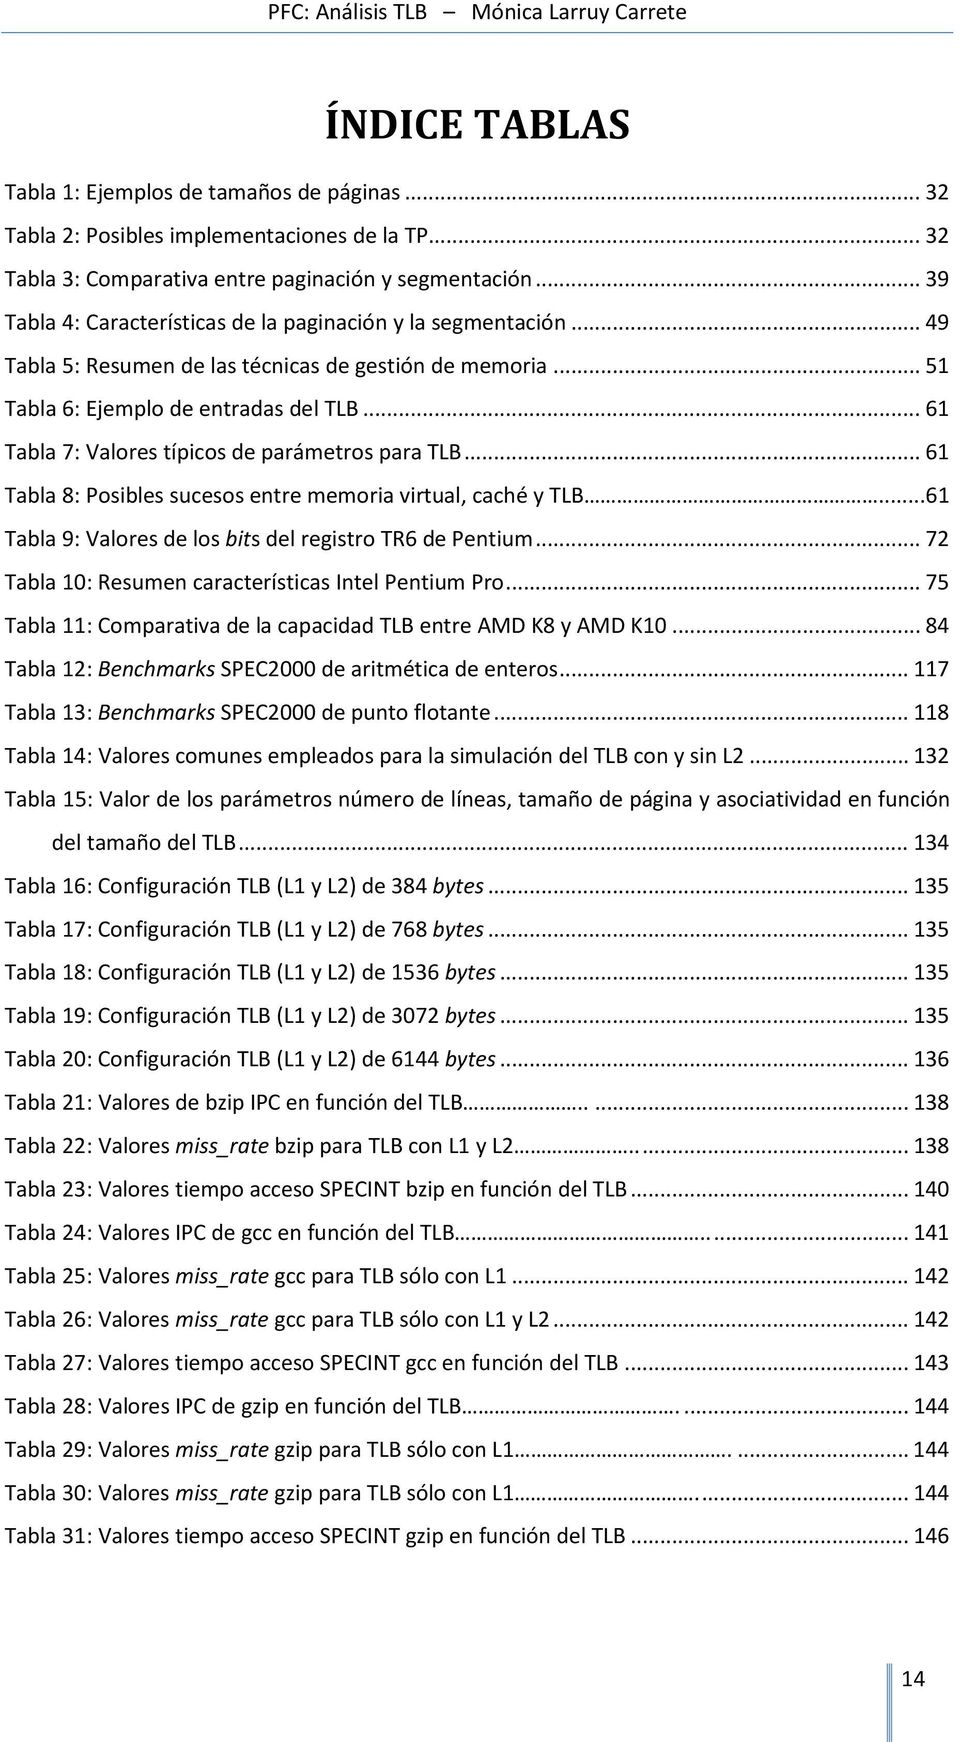 .. 61 Tabla 7: Valores típicos de parámetros para TLB... 61 Tabla 8: Posibles sucesos entre memoria virtual, caché y TLB...61 Tabla 9: Valores de los bits del registro TR6 de Pentium.